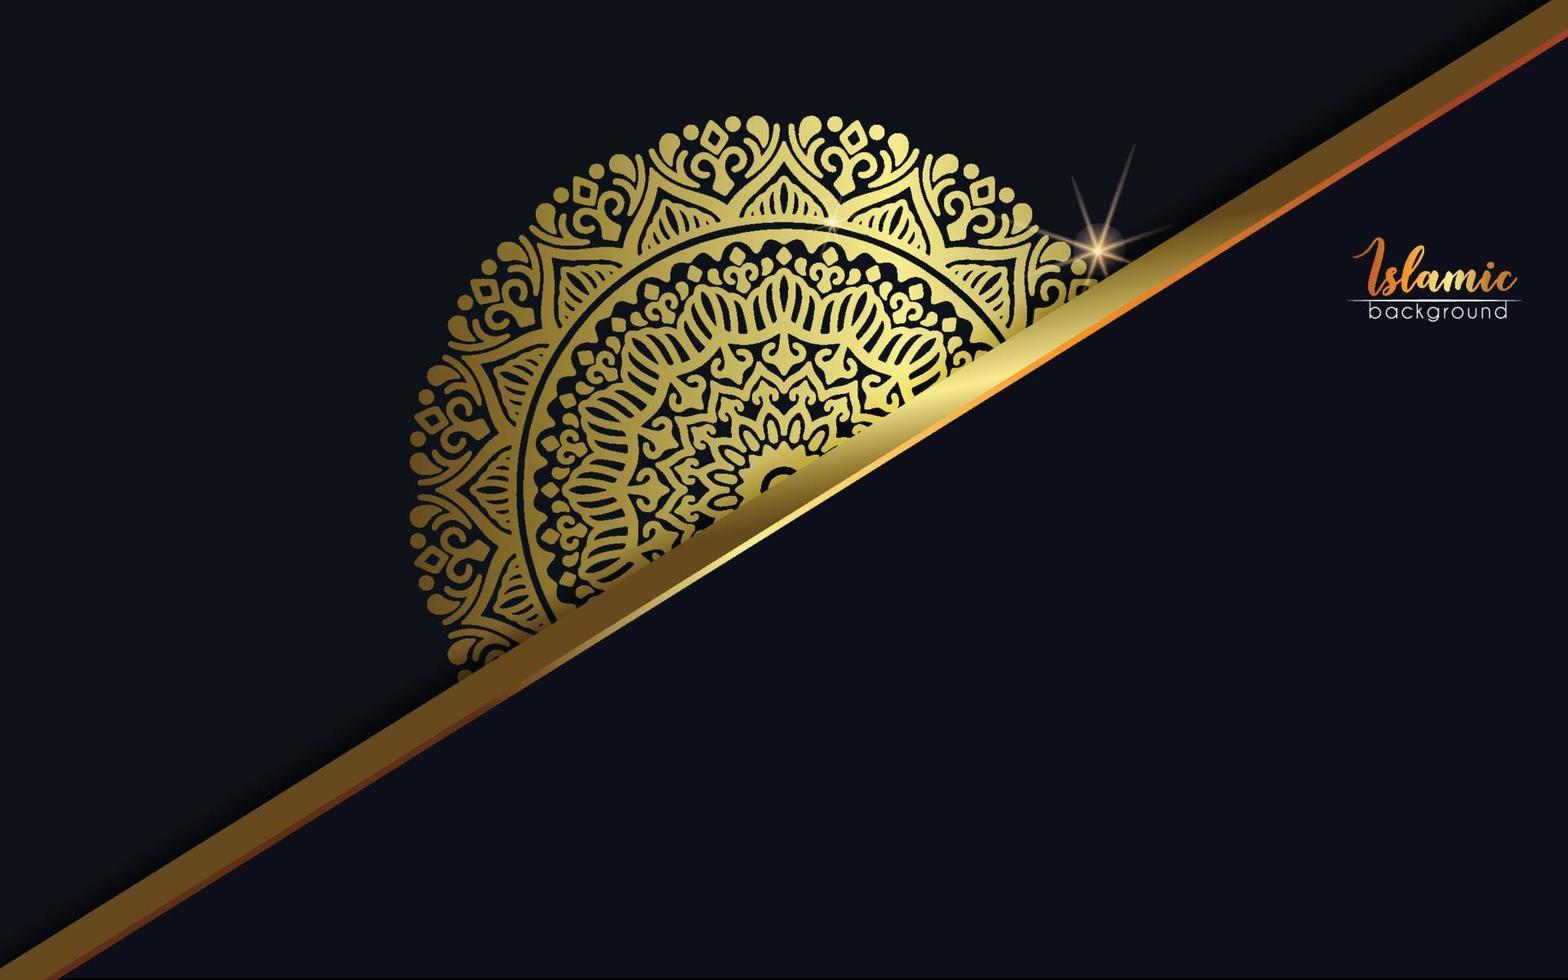 luxe sier mandala achtergrond met Arabische islamitische oosten patroon stijl premium vector gratis vecto